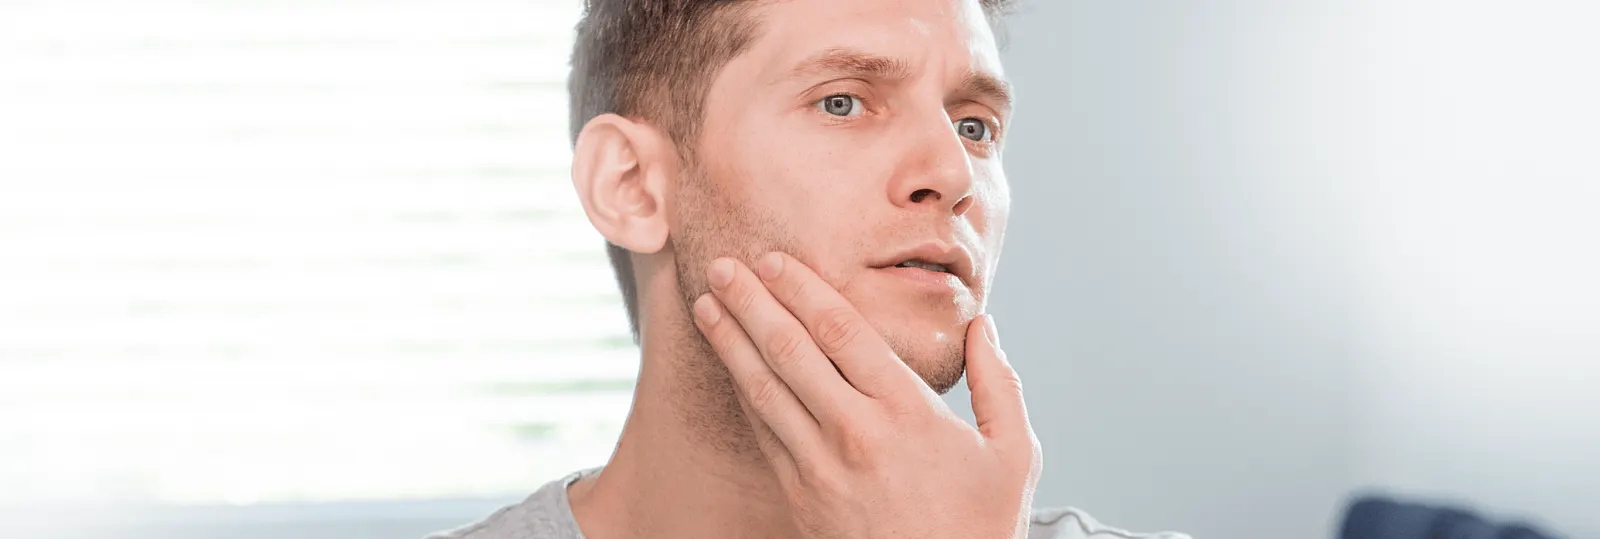 Estudio revela que la Gillette SkinGuard Sensitive reduce en más de un 60 % la incidencia del sarpullido al afeitarse